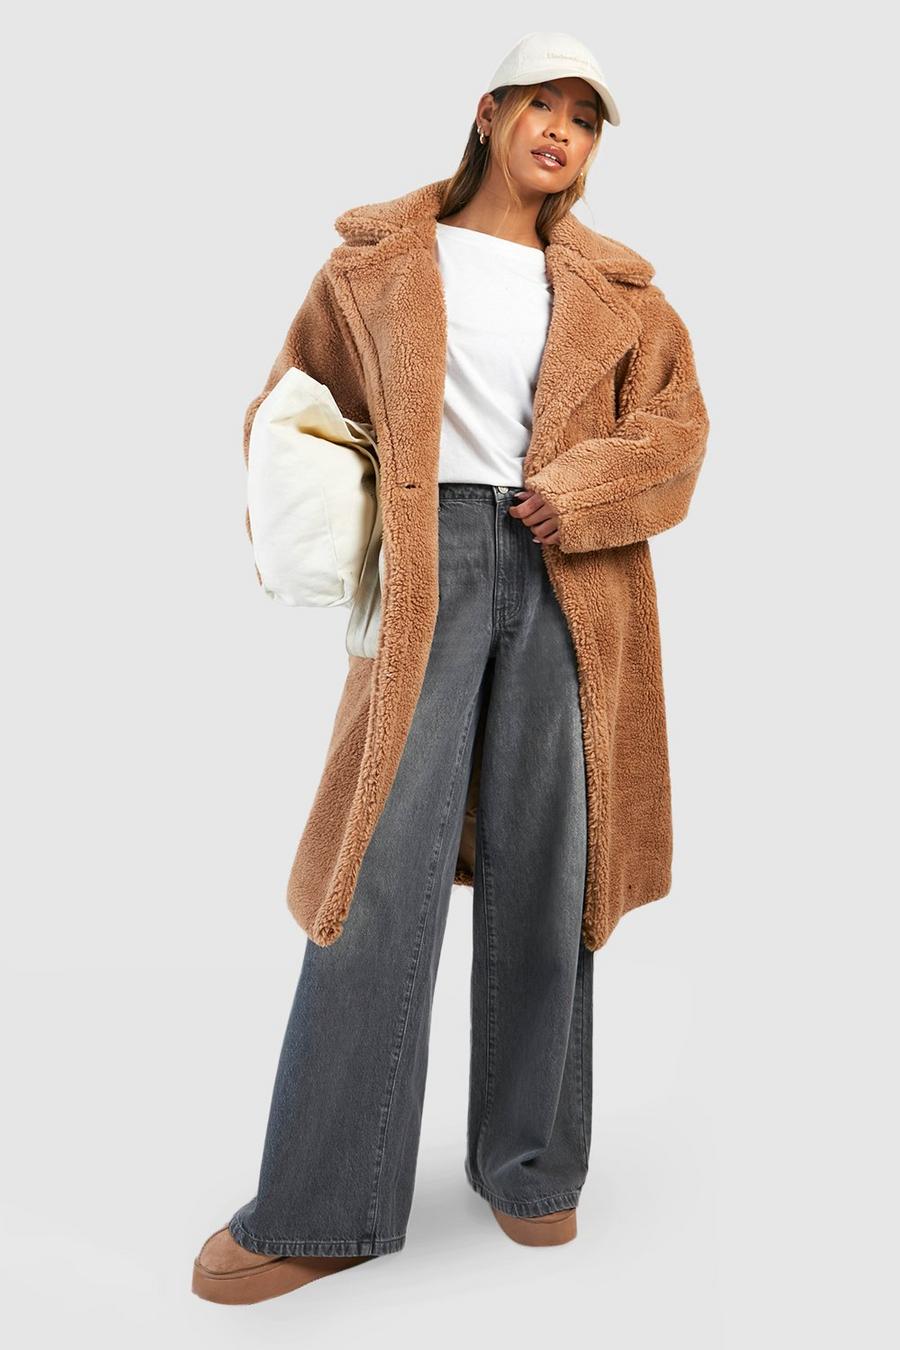 Cheap Long Teddy Bear Jacket Coat Women Winter Thick Warm Oversized Chunky  Outerwear Overcoat Women Faux Lambswool Fur Coats